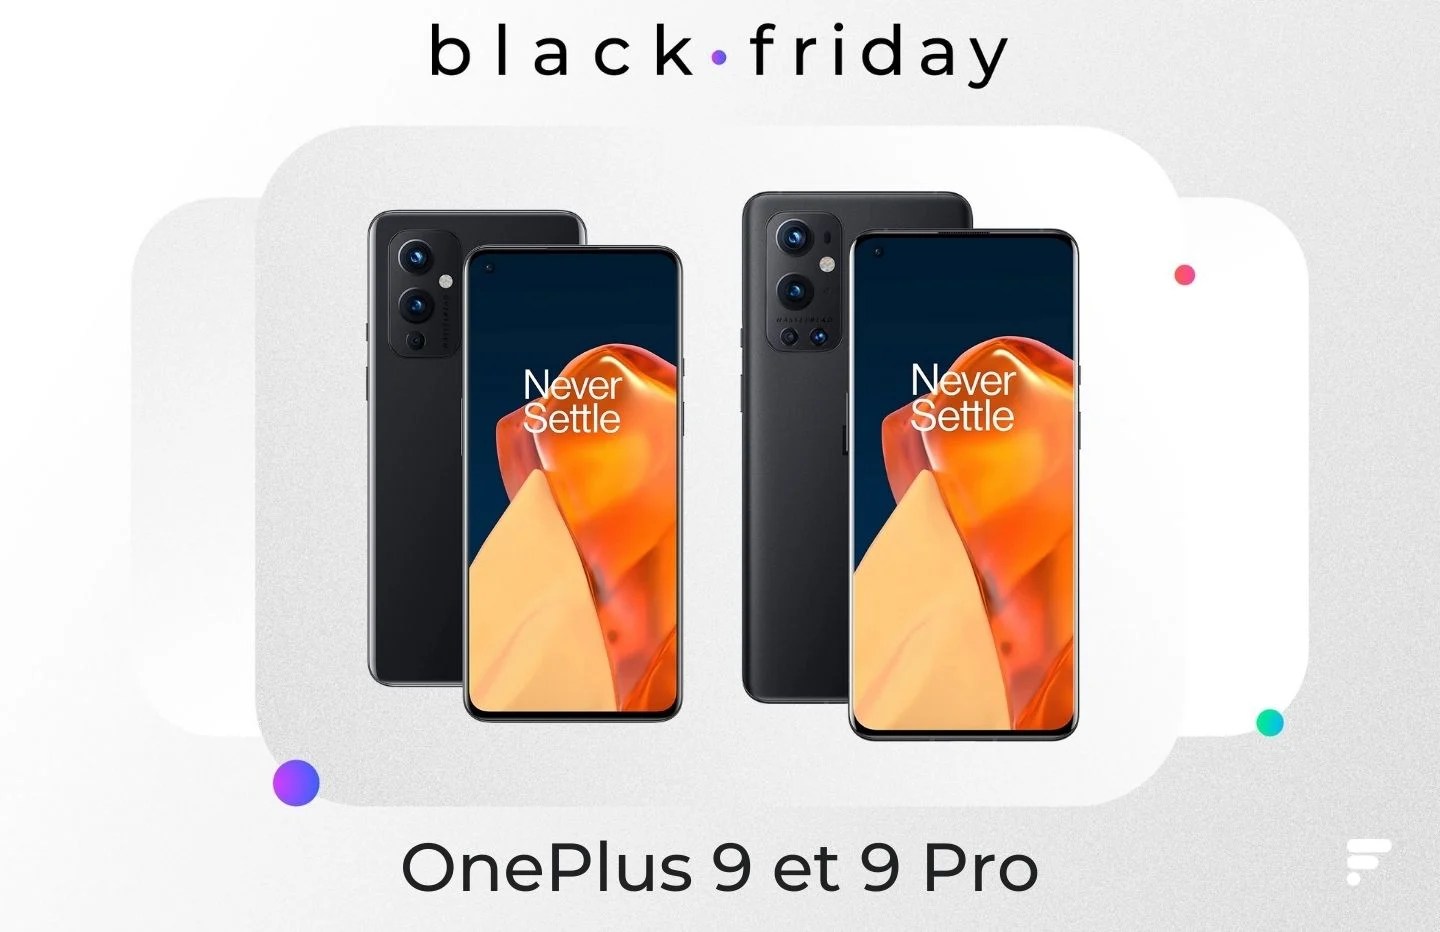 OnePlus 9 et 9 Pro : ces 2 smartphones premium sont bradés pour le Black Friday